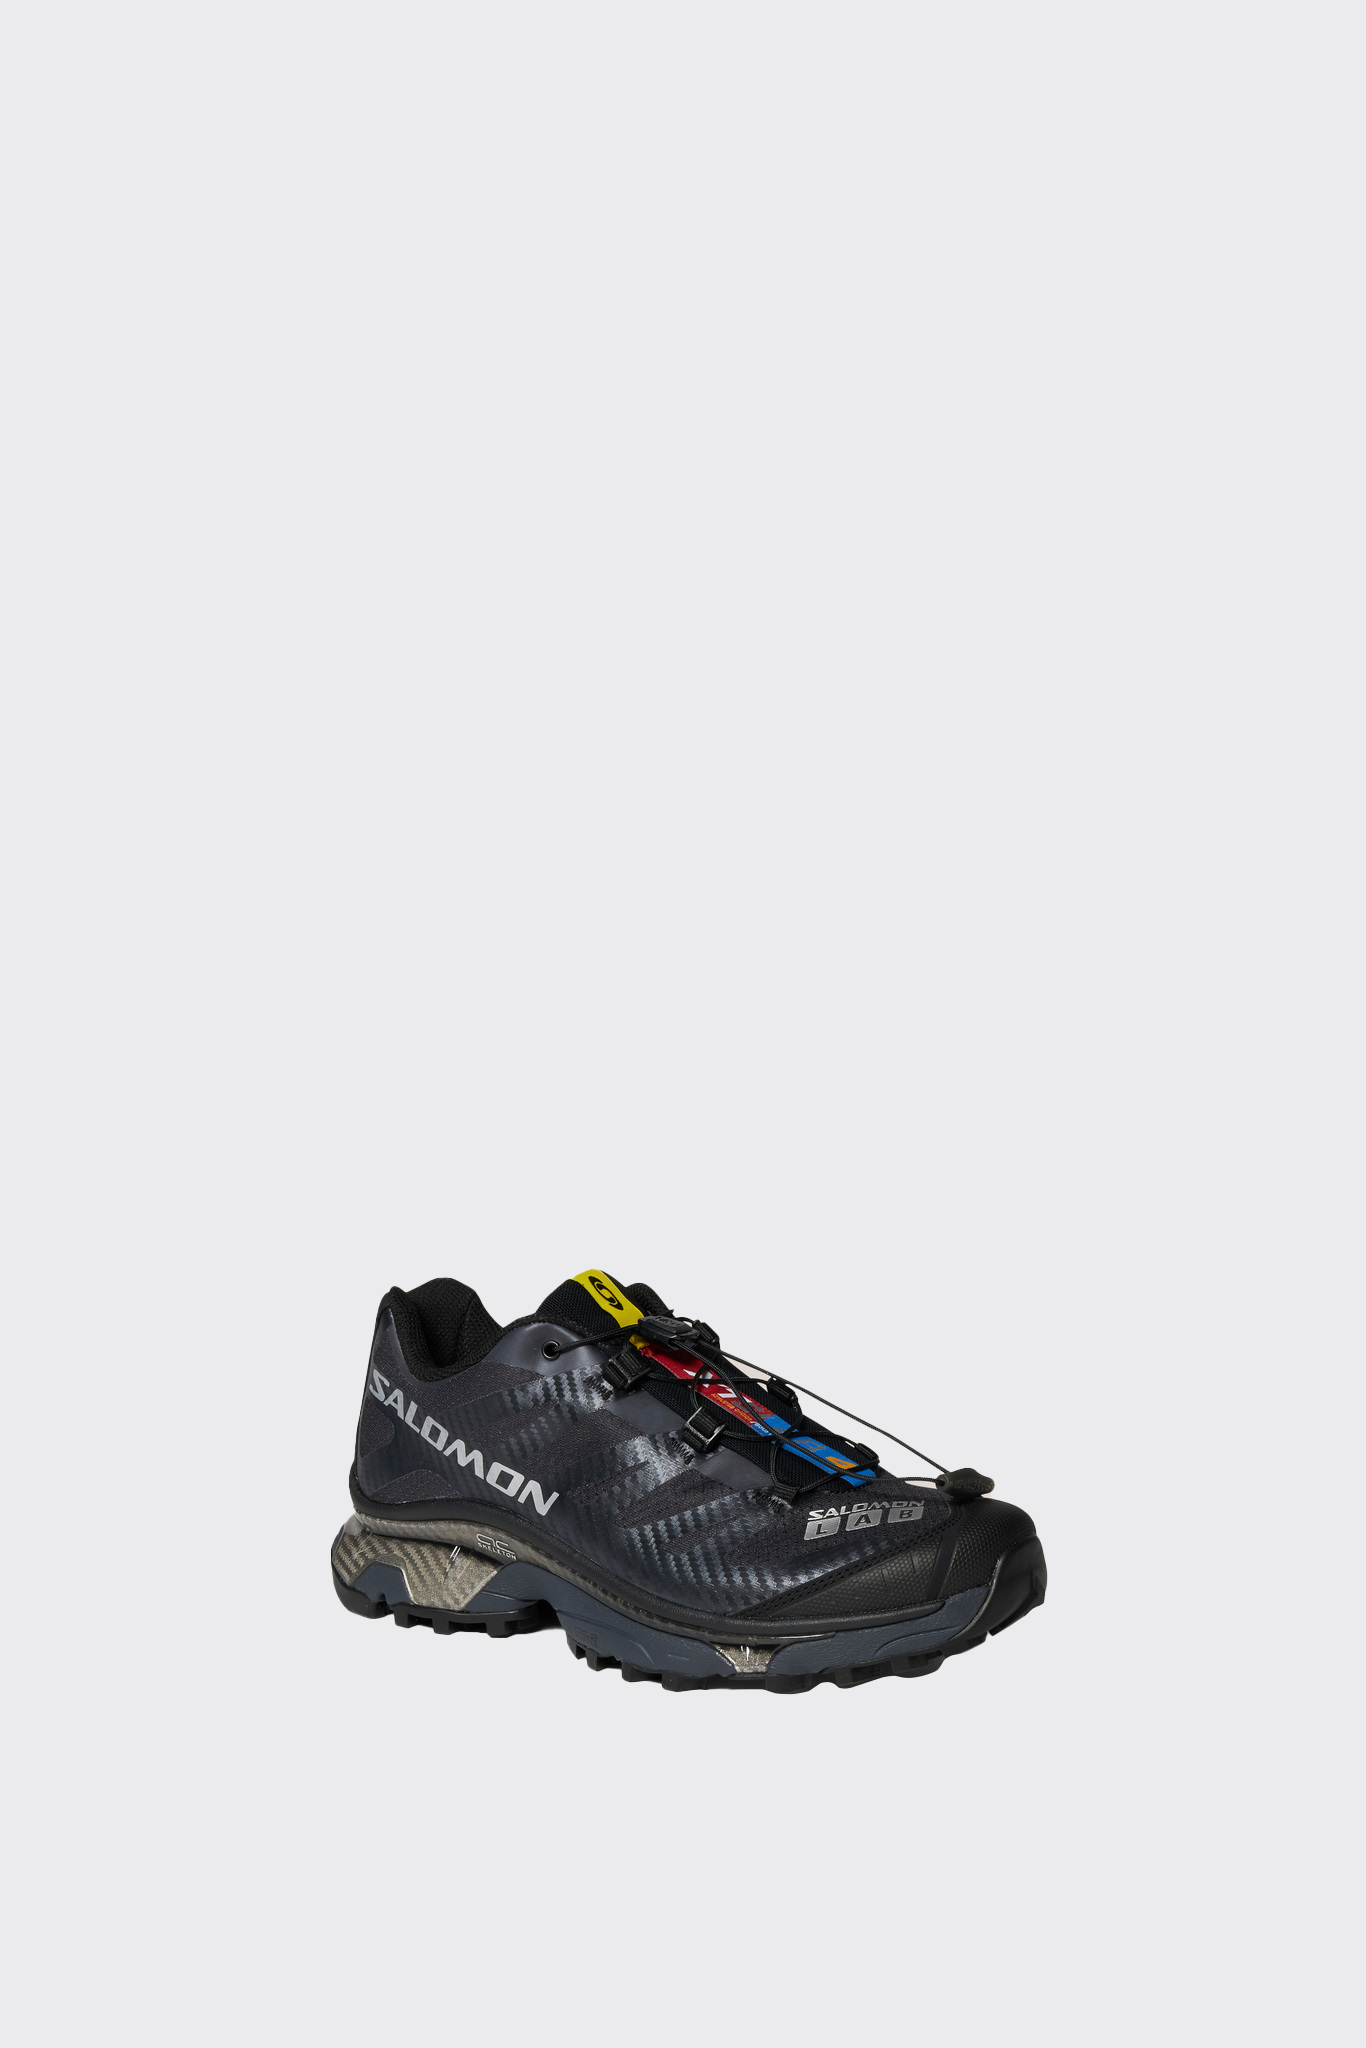 Black XT-4 OG sneakers